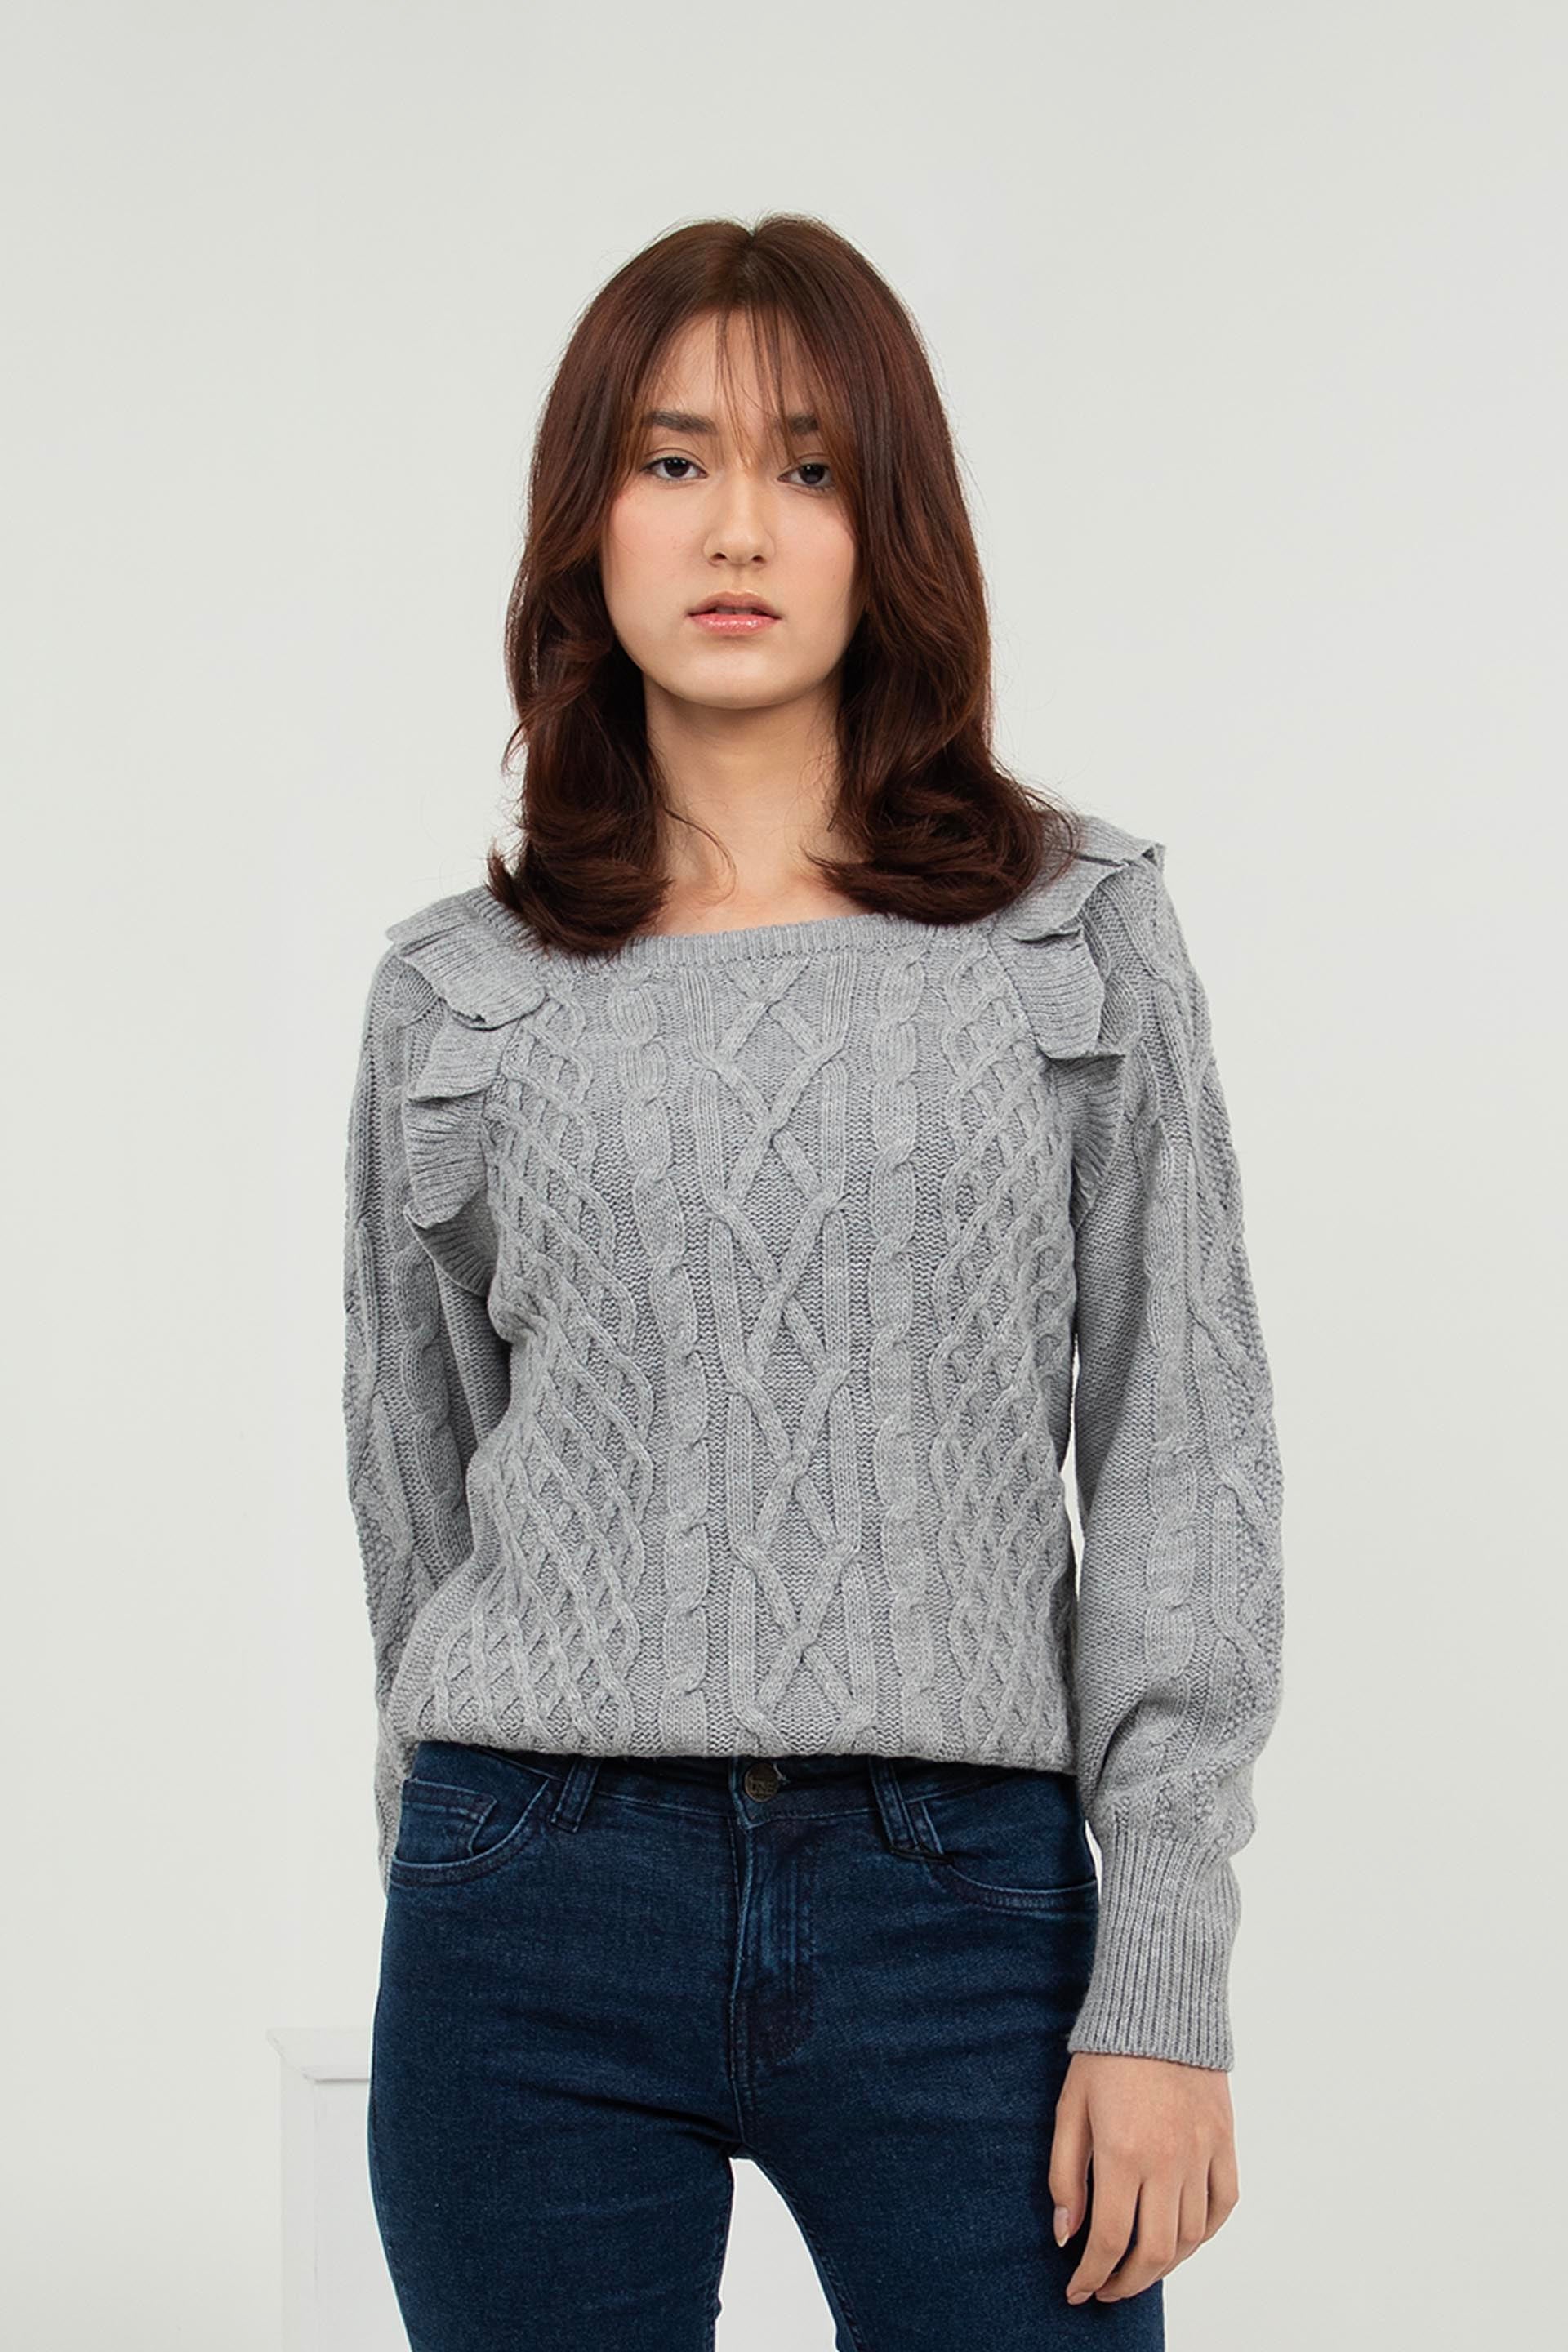 Ruffled Sweater Grey